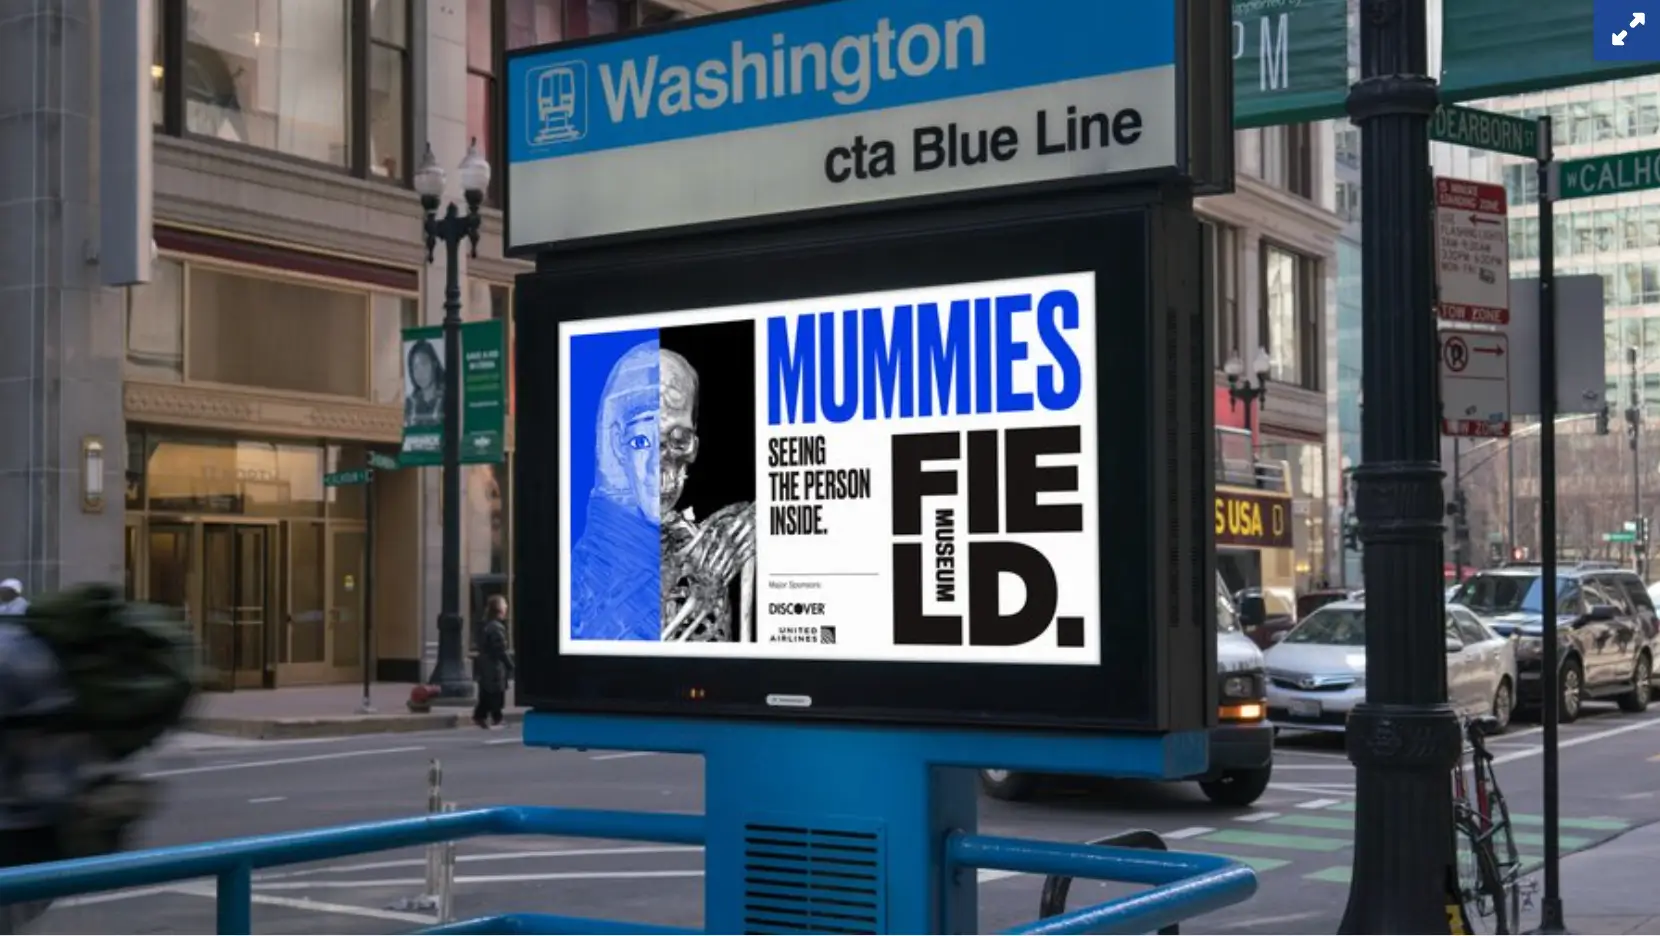 Esta imagen muestra la campaña del Field Museum de Chicago para su exhibición de momias en 2018, combinando publicidad tradicional con contenido de redes sociales para generar interés y atraer visitantes al museo.